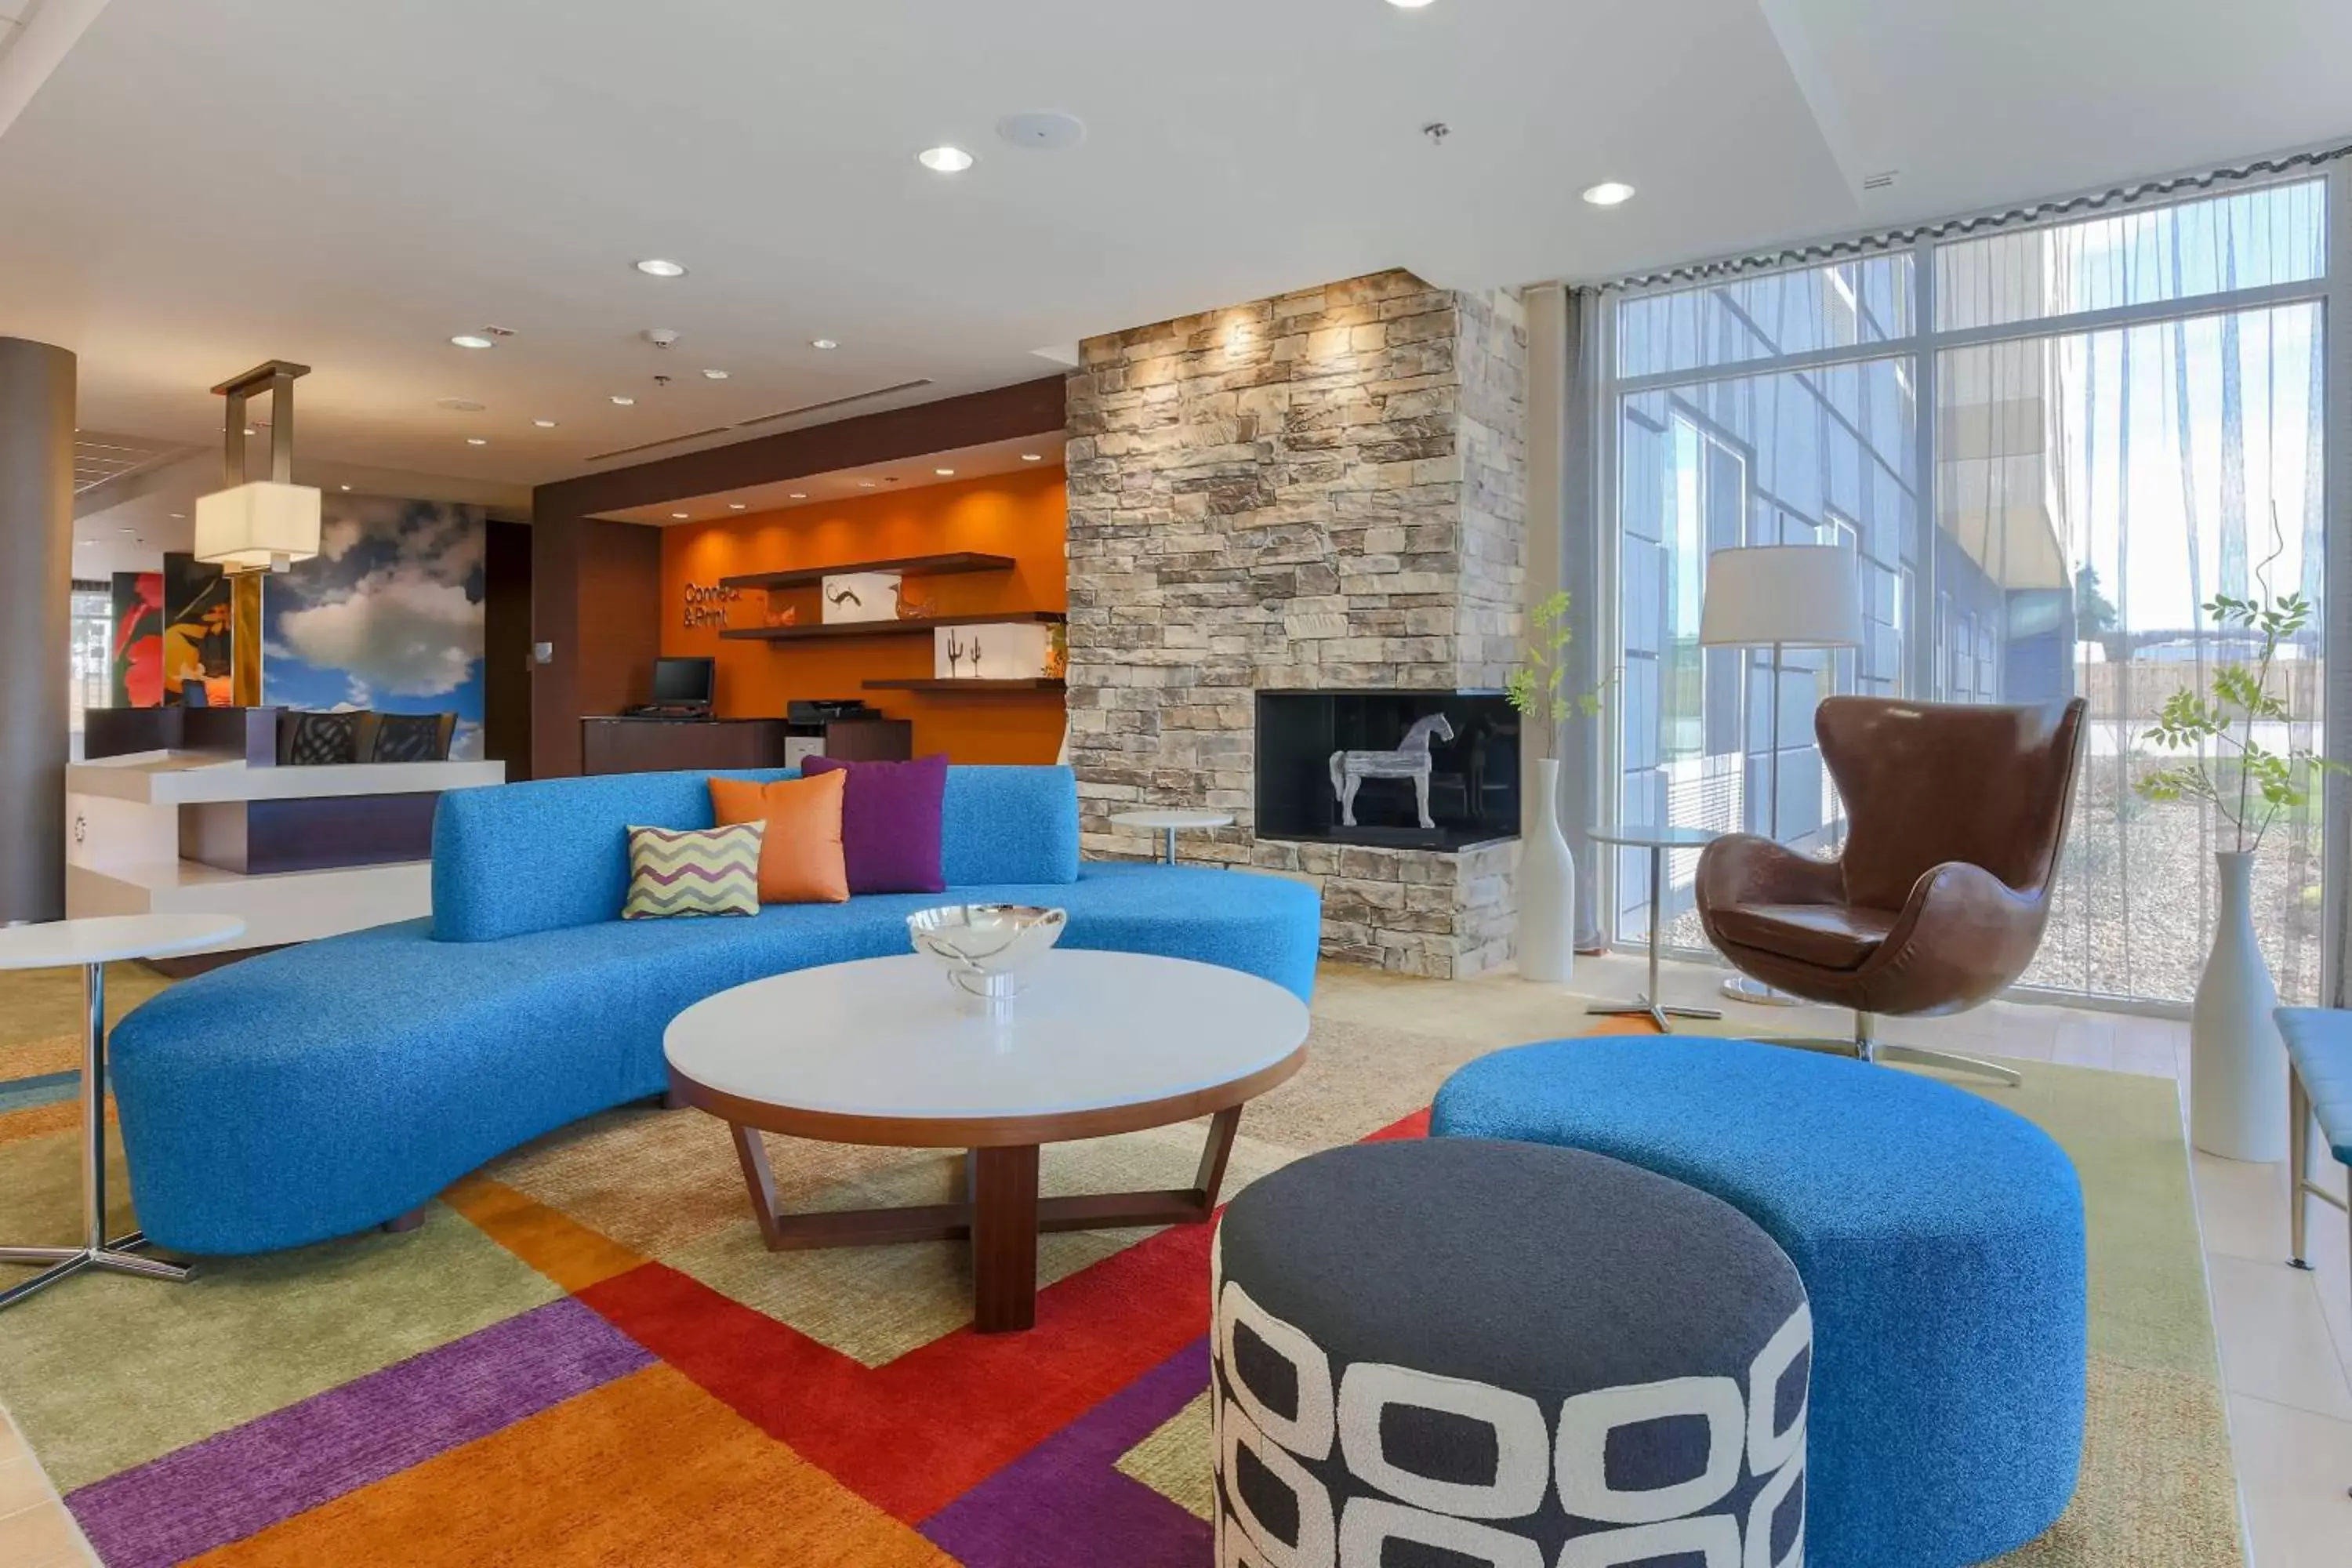 Lobby or reception, Lobby/Reception in Fairfield Inn & Suites by Marriott Cuero